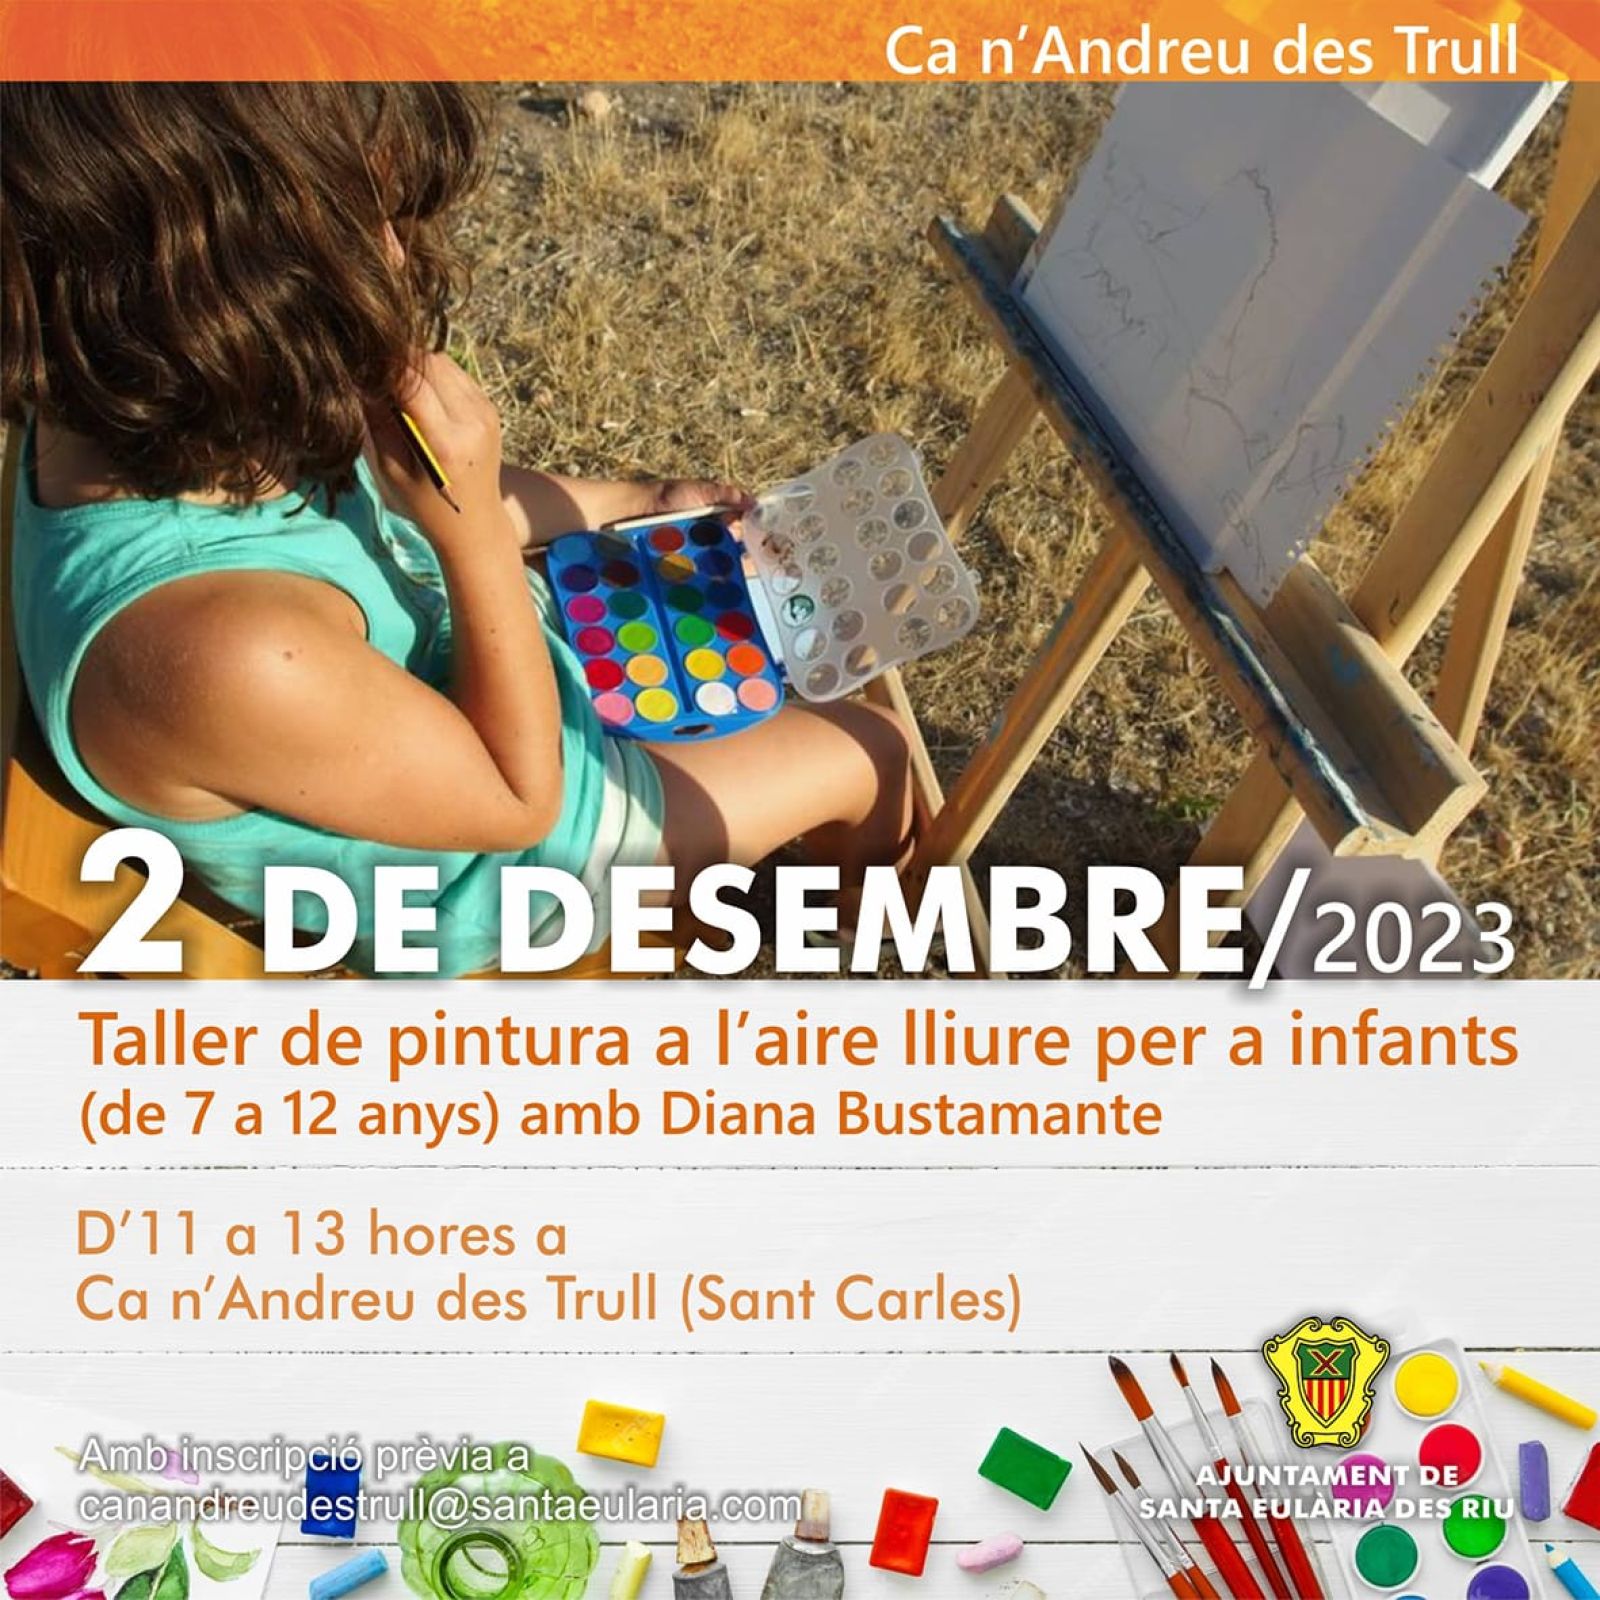 Taller de pintura para niños en Ca n'Andreu des Trull el 2 de diciembre